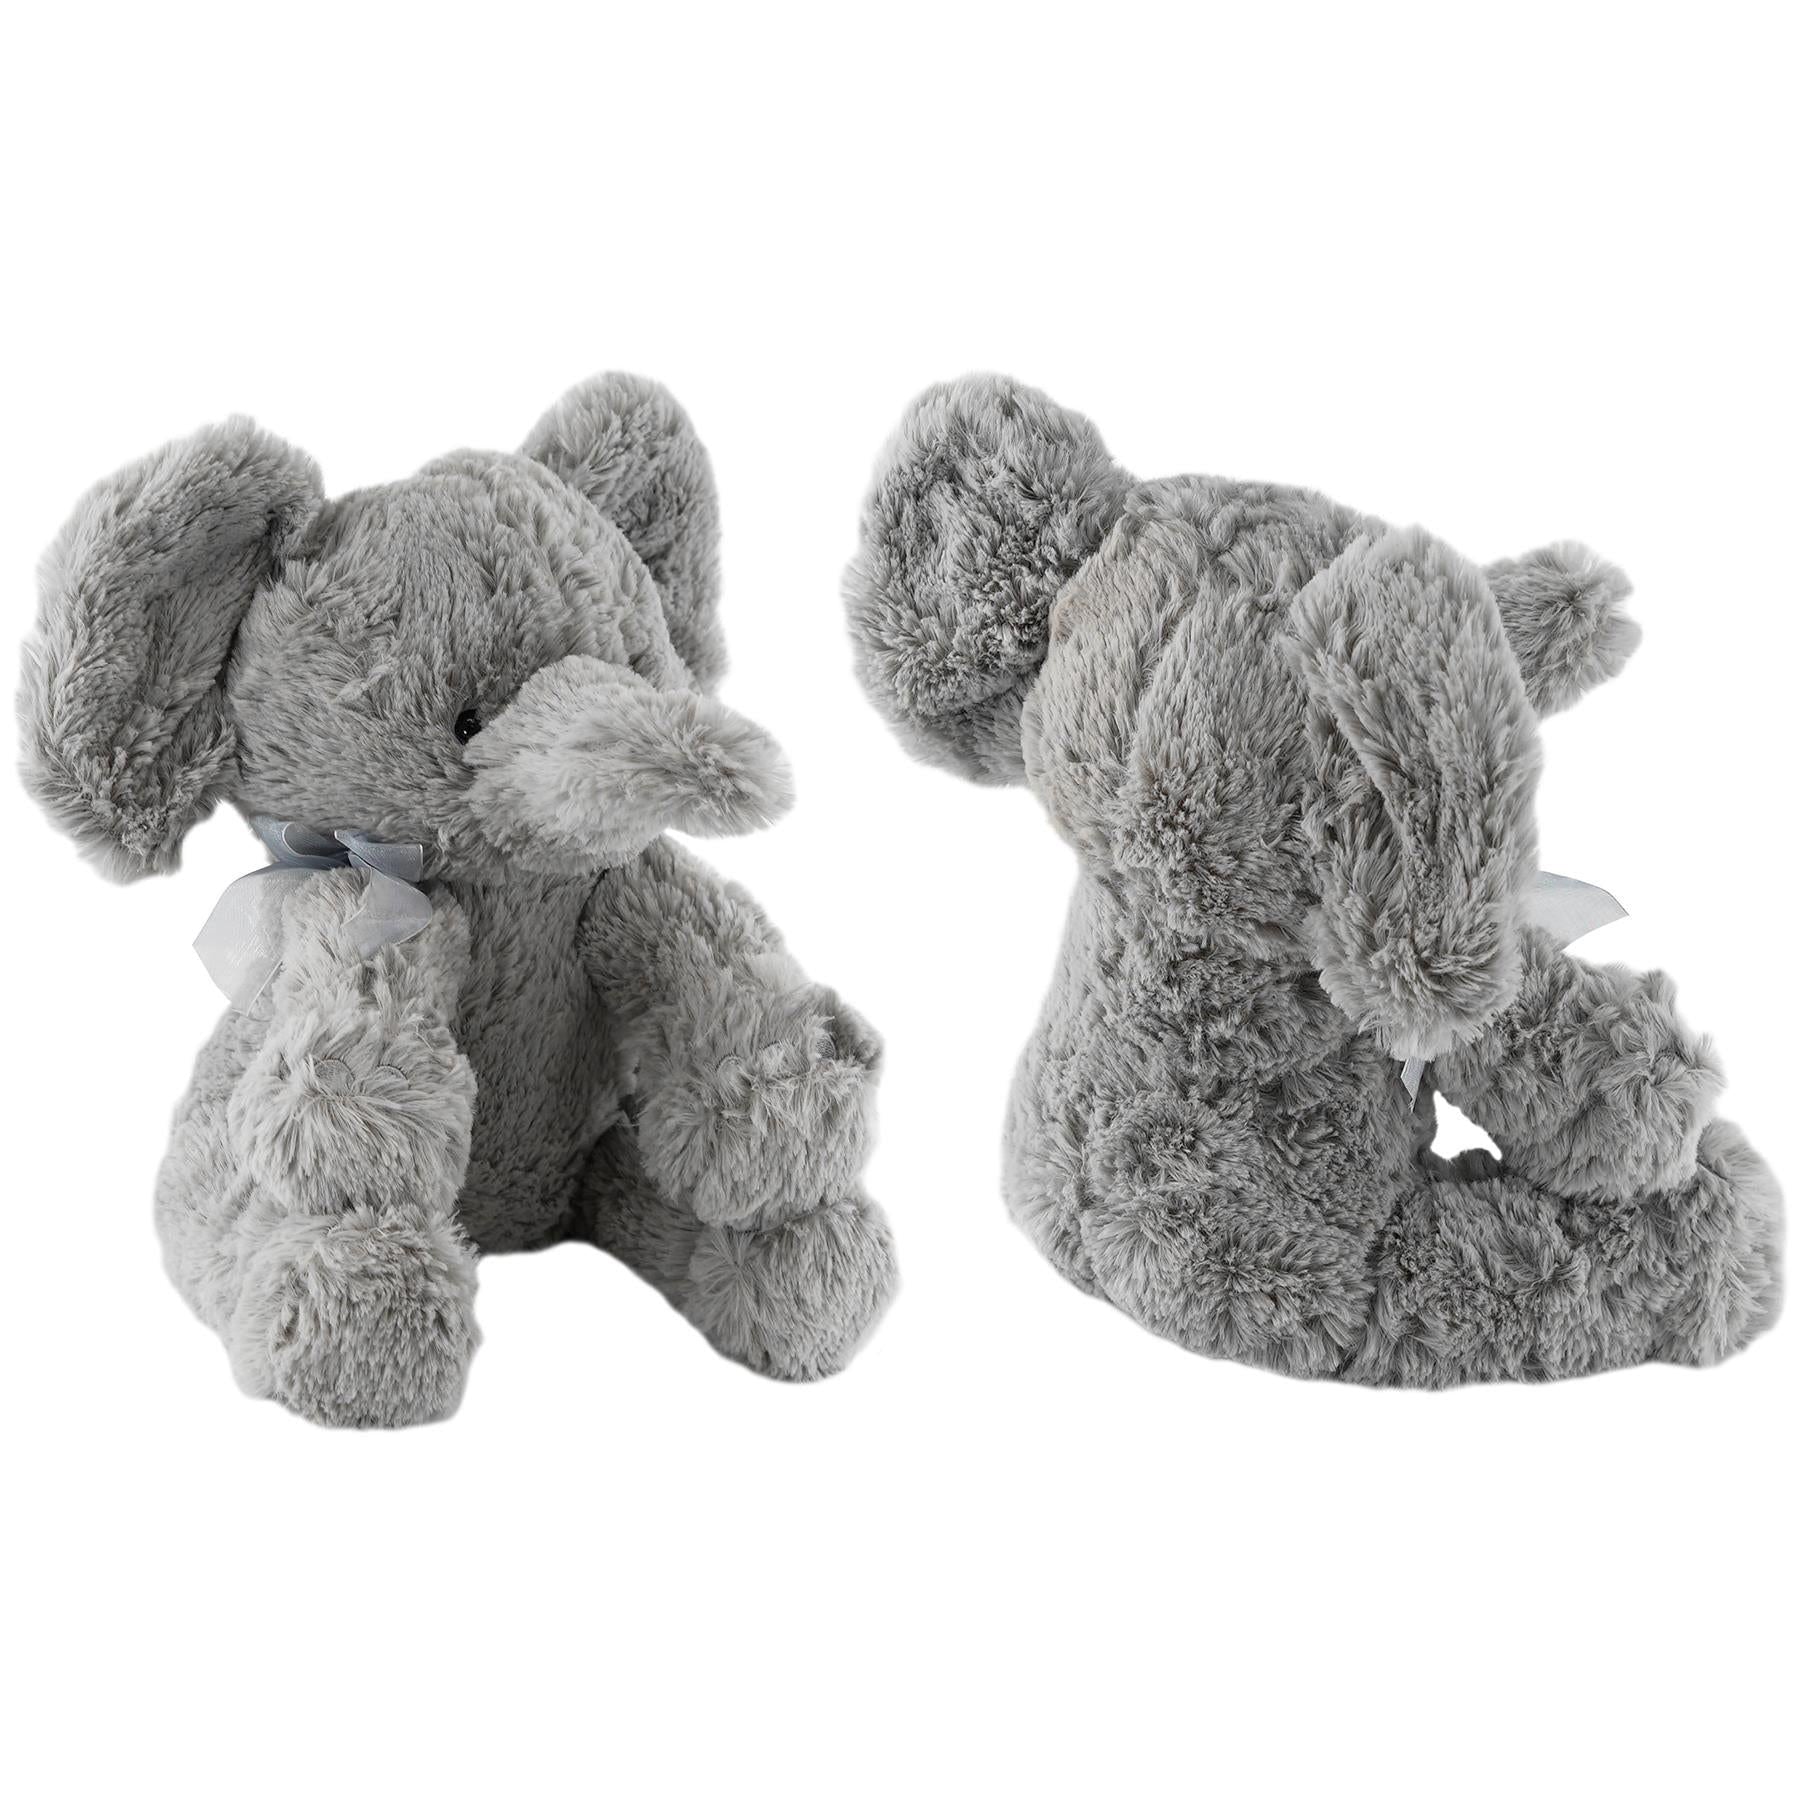 The Magic Toy Shop Plush Toy Grey Plush Elephant Soft Toys